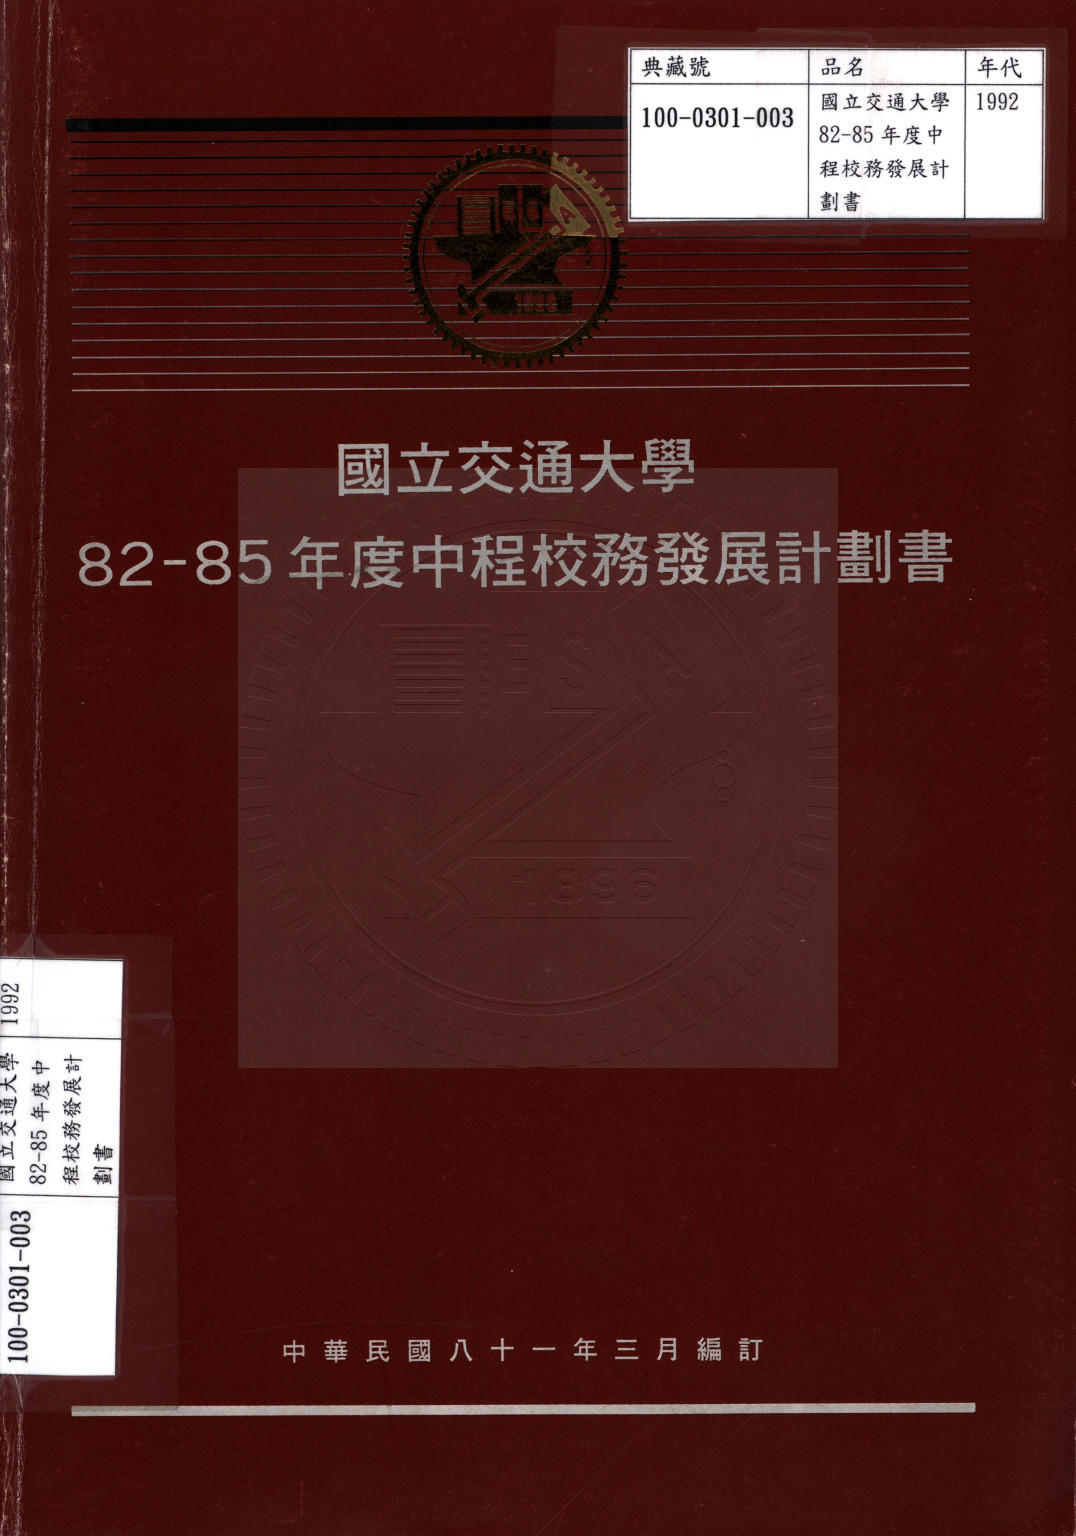 國立交通大學82-85年度中程校務發展計劃書